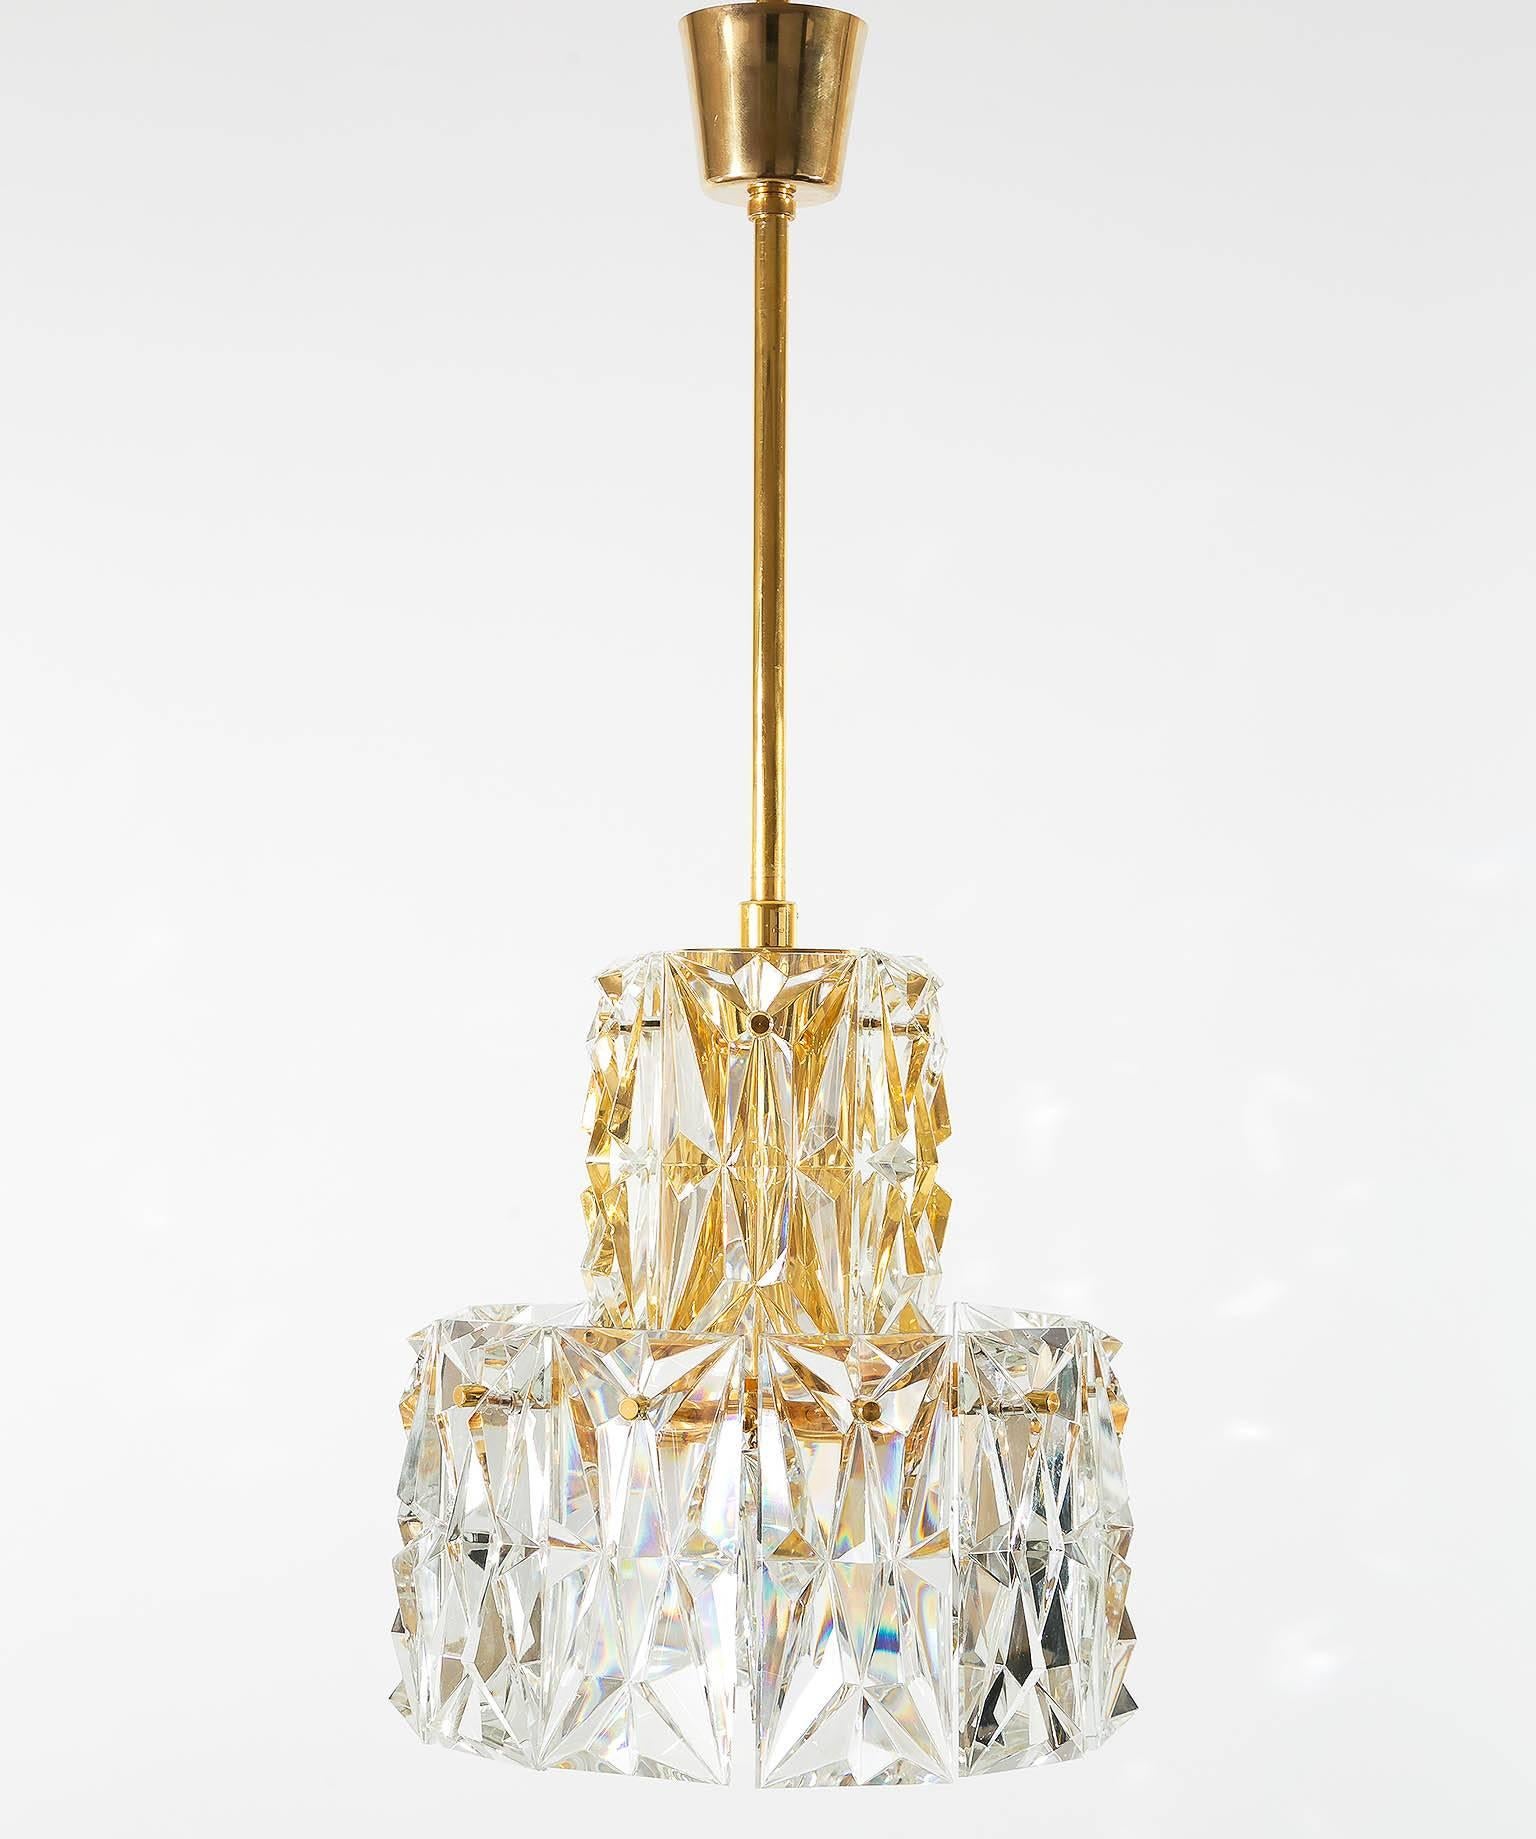 Lampe suspendue de haute qualité en laiton plaqué or et grand verre de cristal taillé par Palwa, Allemagne, fabriquée au milieu du siècle dernier, vers 1970 (fin des années 1960 ou début des années 1970). La lampe est en excellent état de